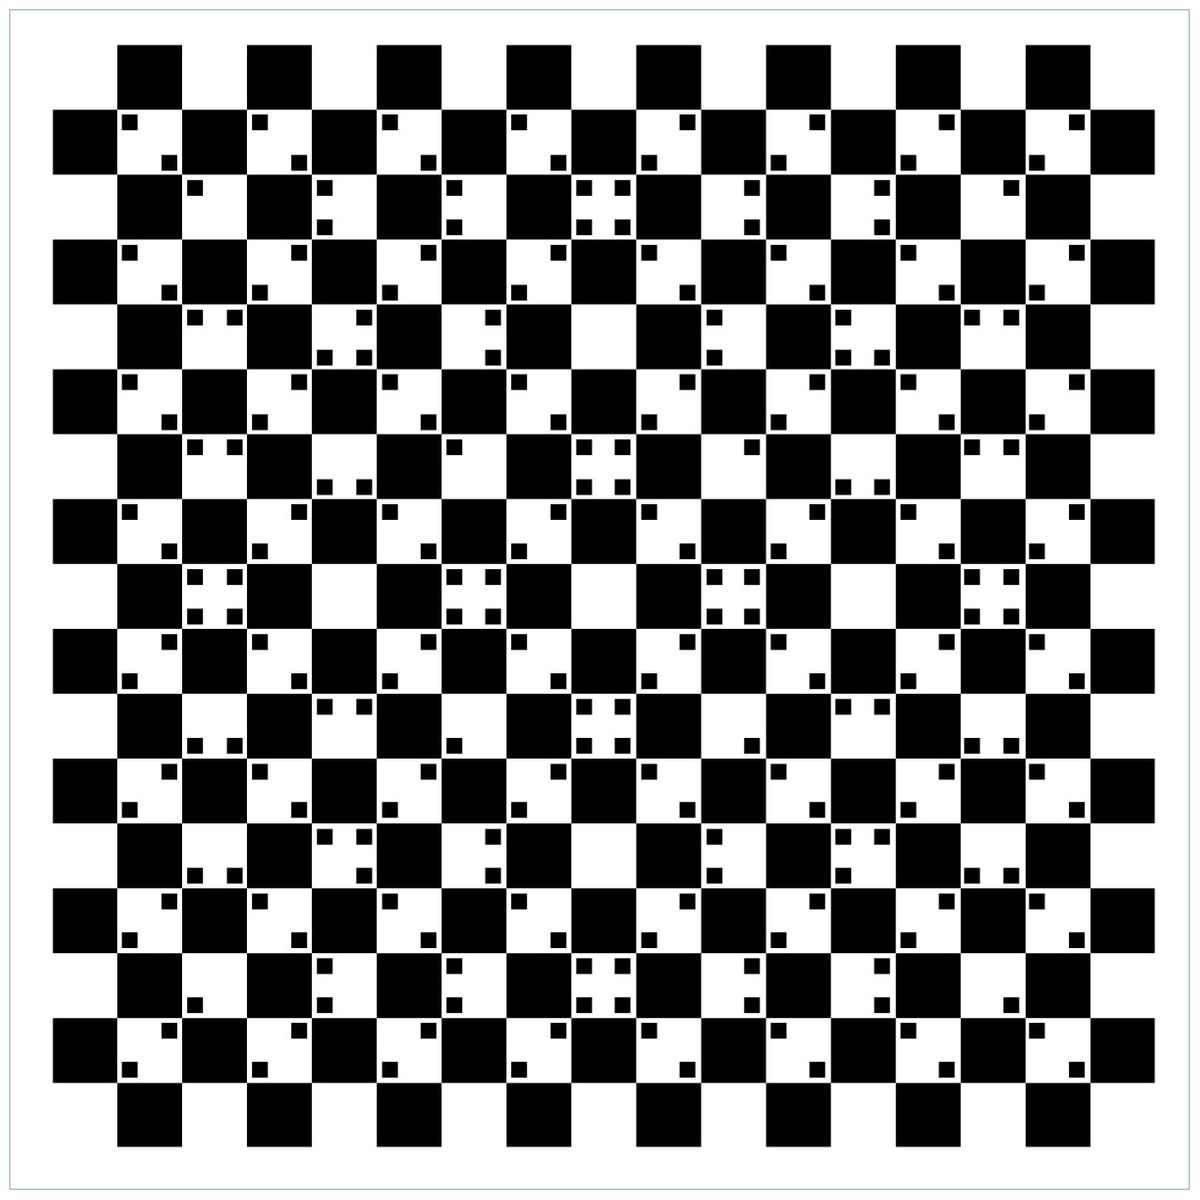 Glasbild Optische Täuschung - Illusion - Schwarz Weiß Ii ganzes Optische Täuschung Bild